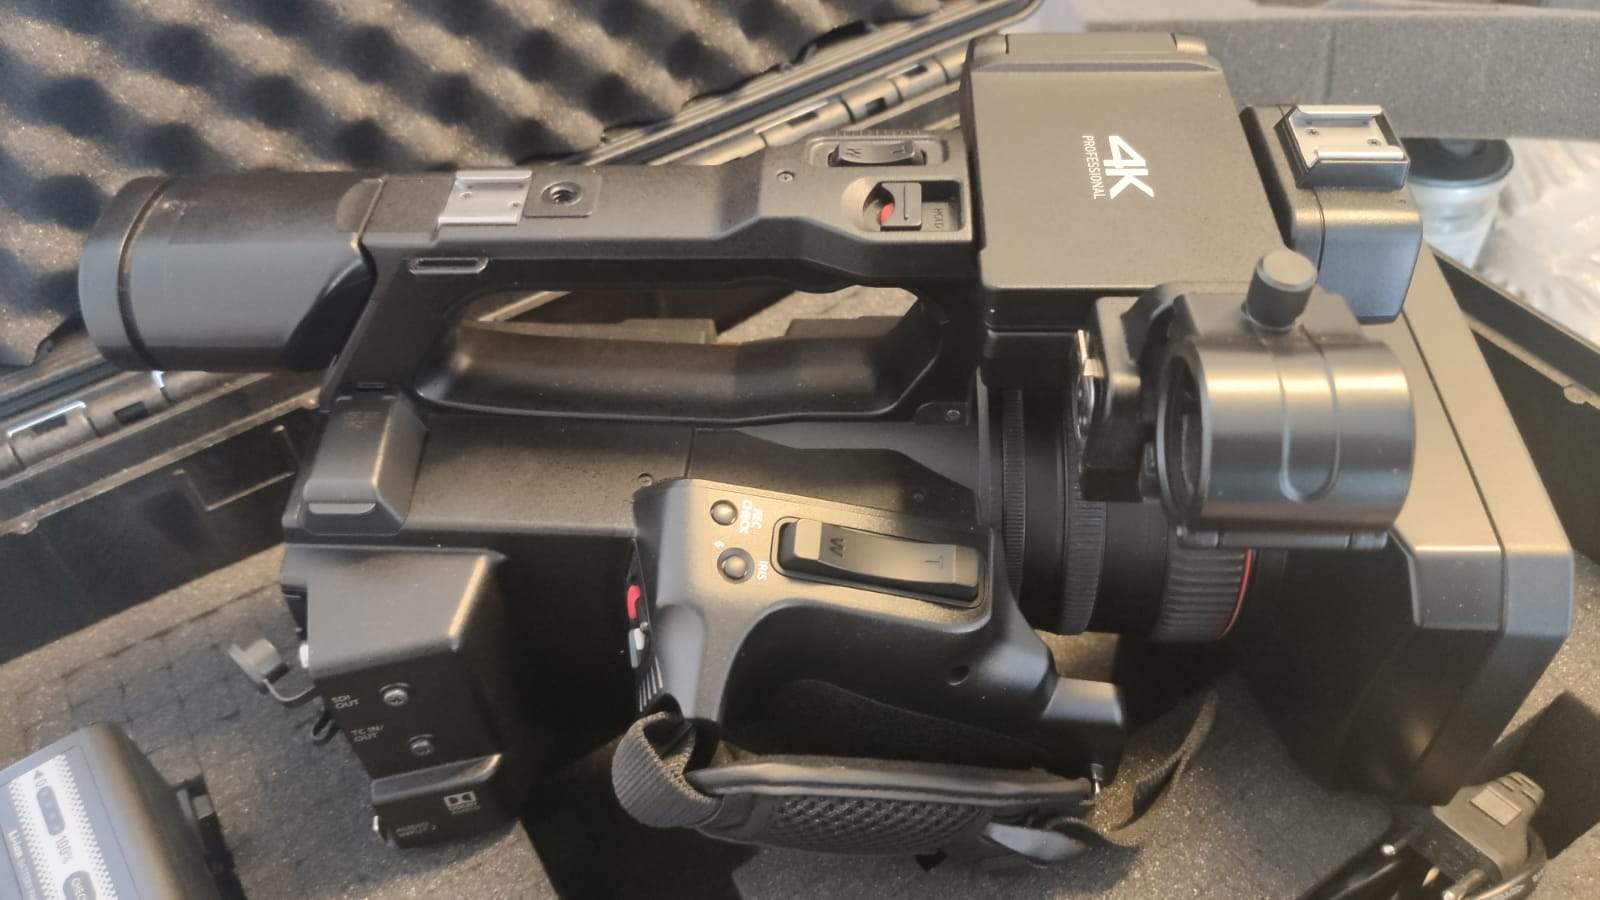 Videocamera PANASONIC AG-CX350EJ + NDI|HX